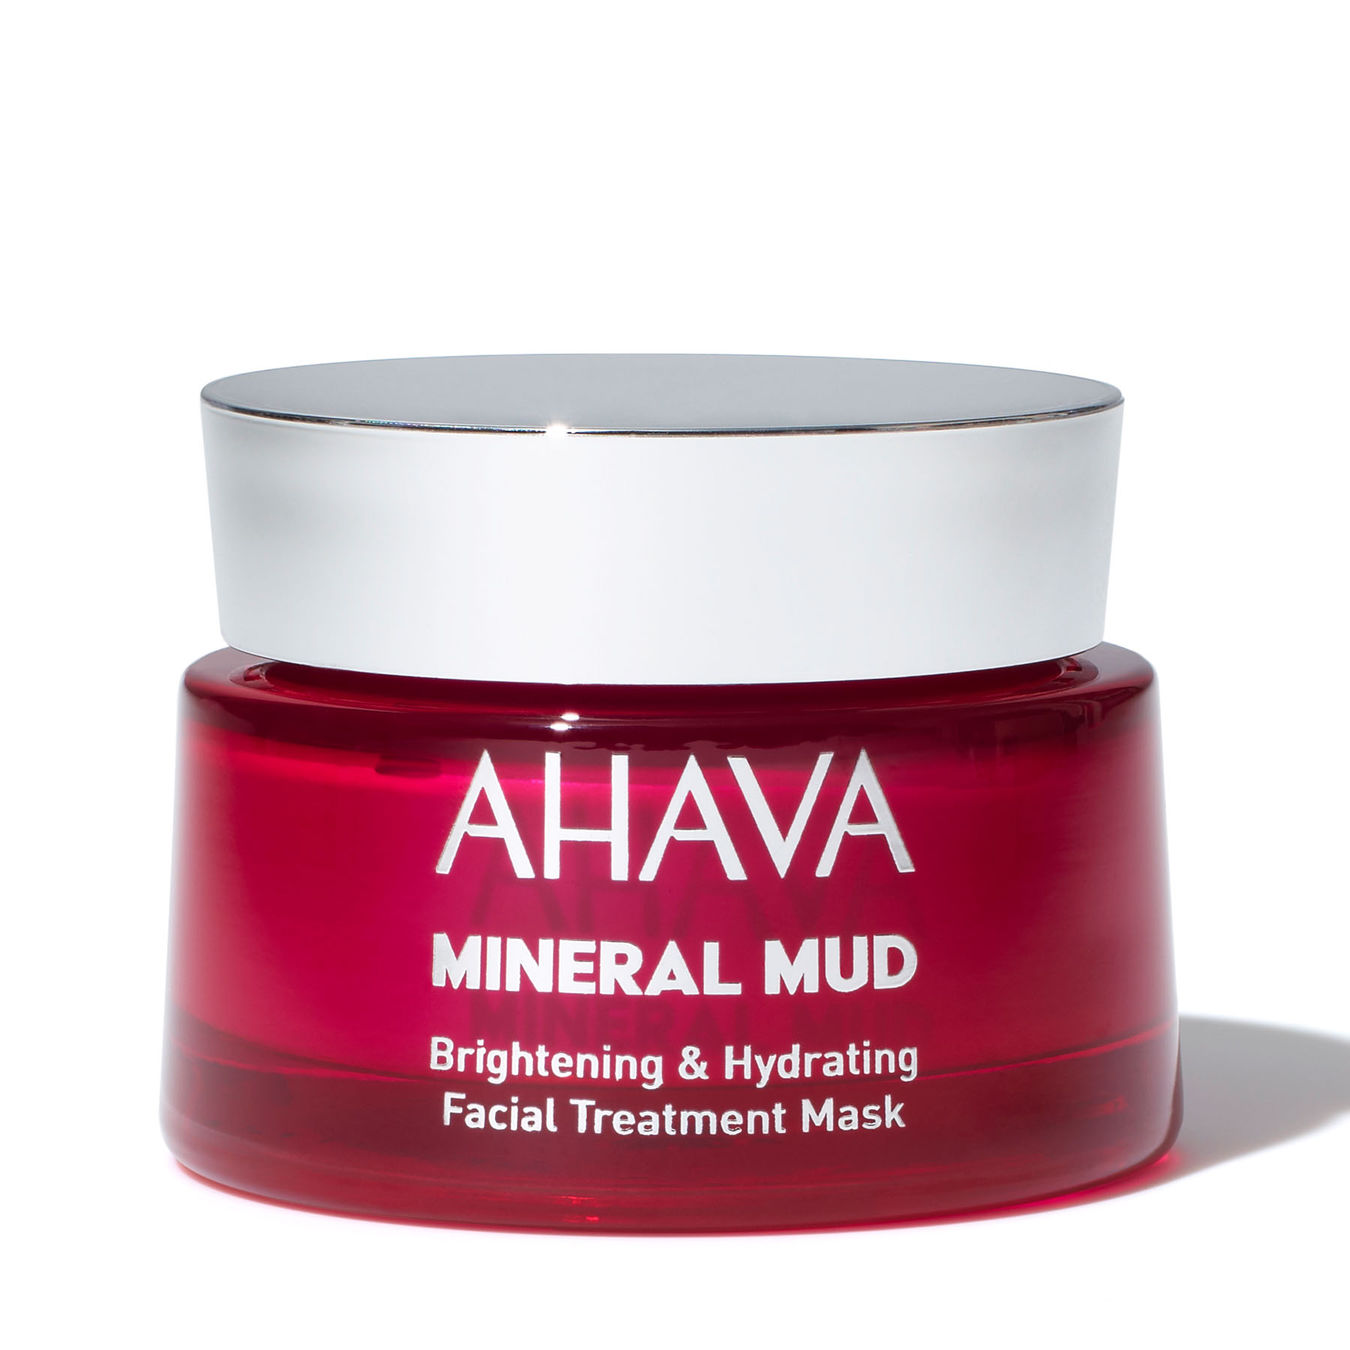 AHAVA Mineral Mud Mask Brightening & Hydrating Facial